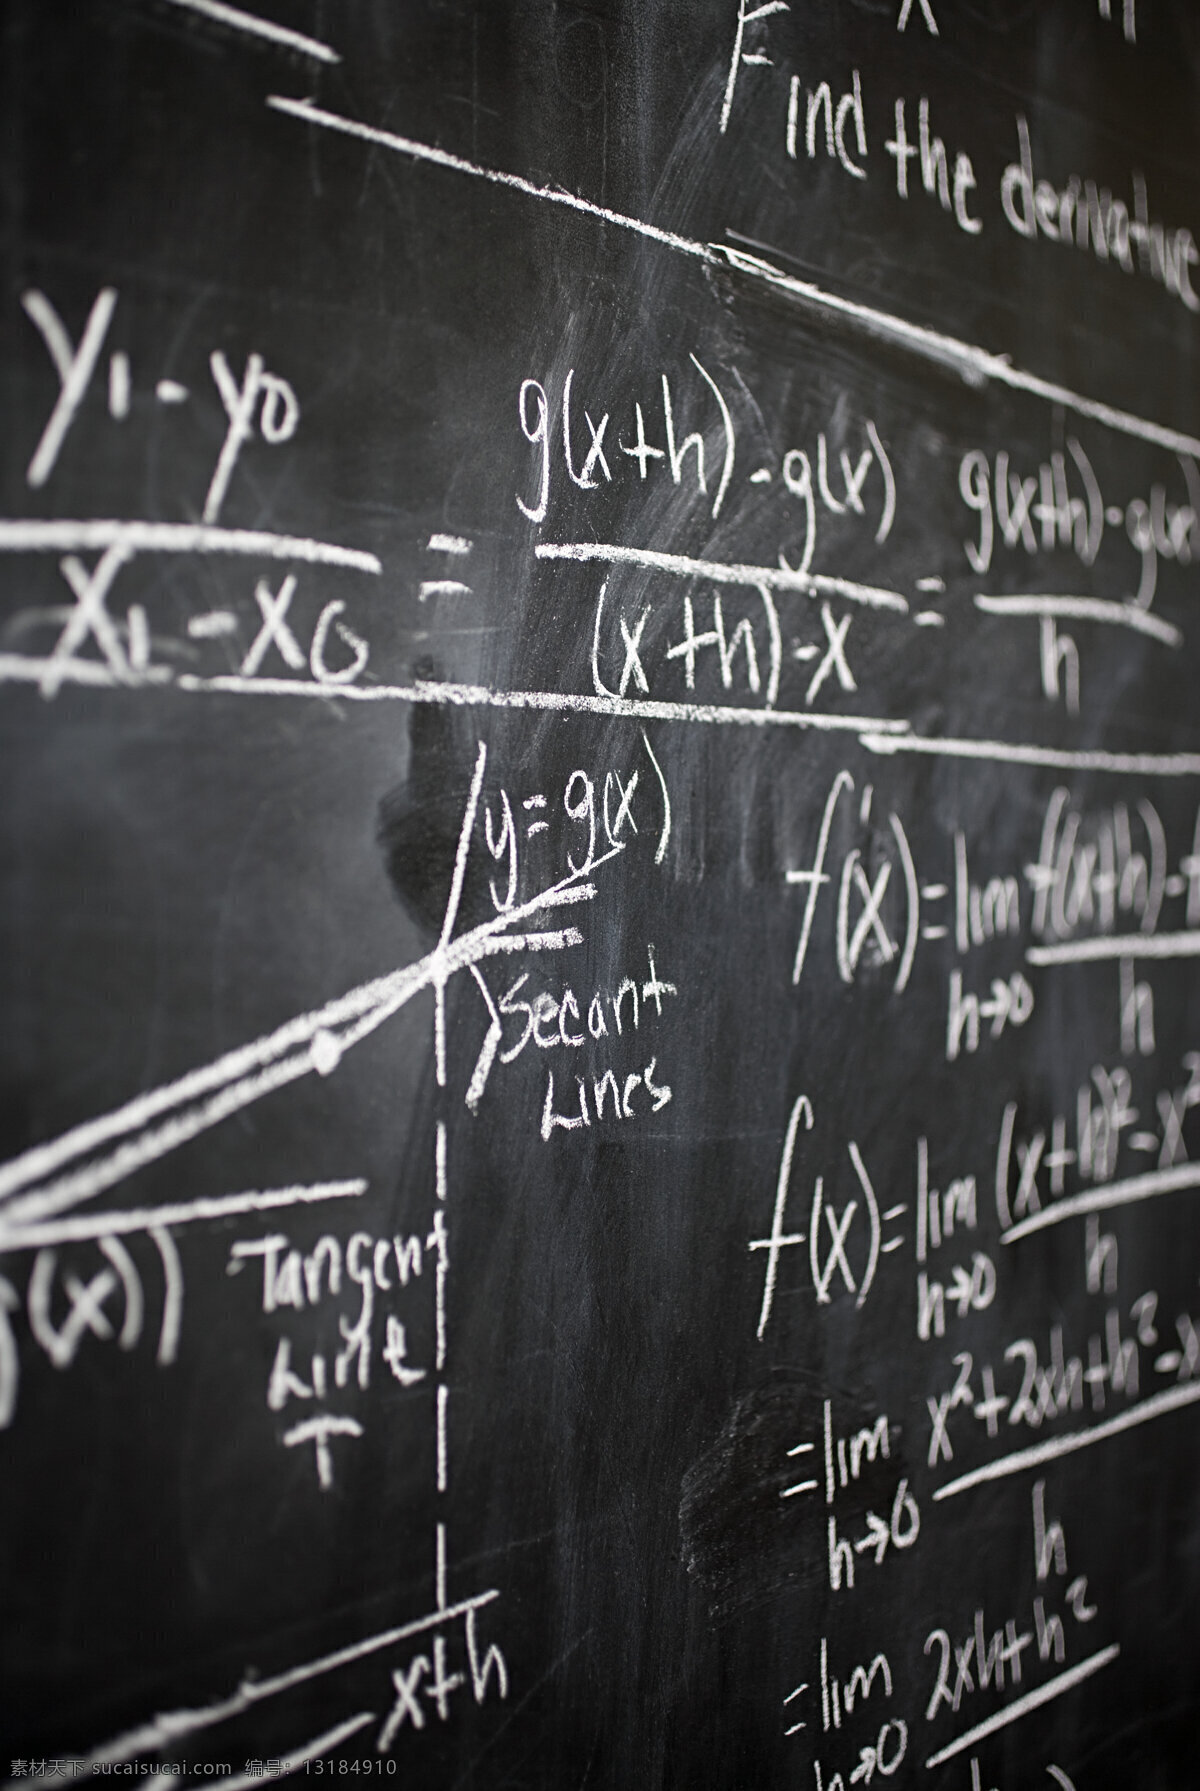 黑板 上 数学 知识 粉笔 习题 函数 导函数 方程函数 教育 教学 特写 近似值 求导 算数 学习工具 高清图片 办公学习 生活百科